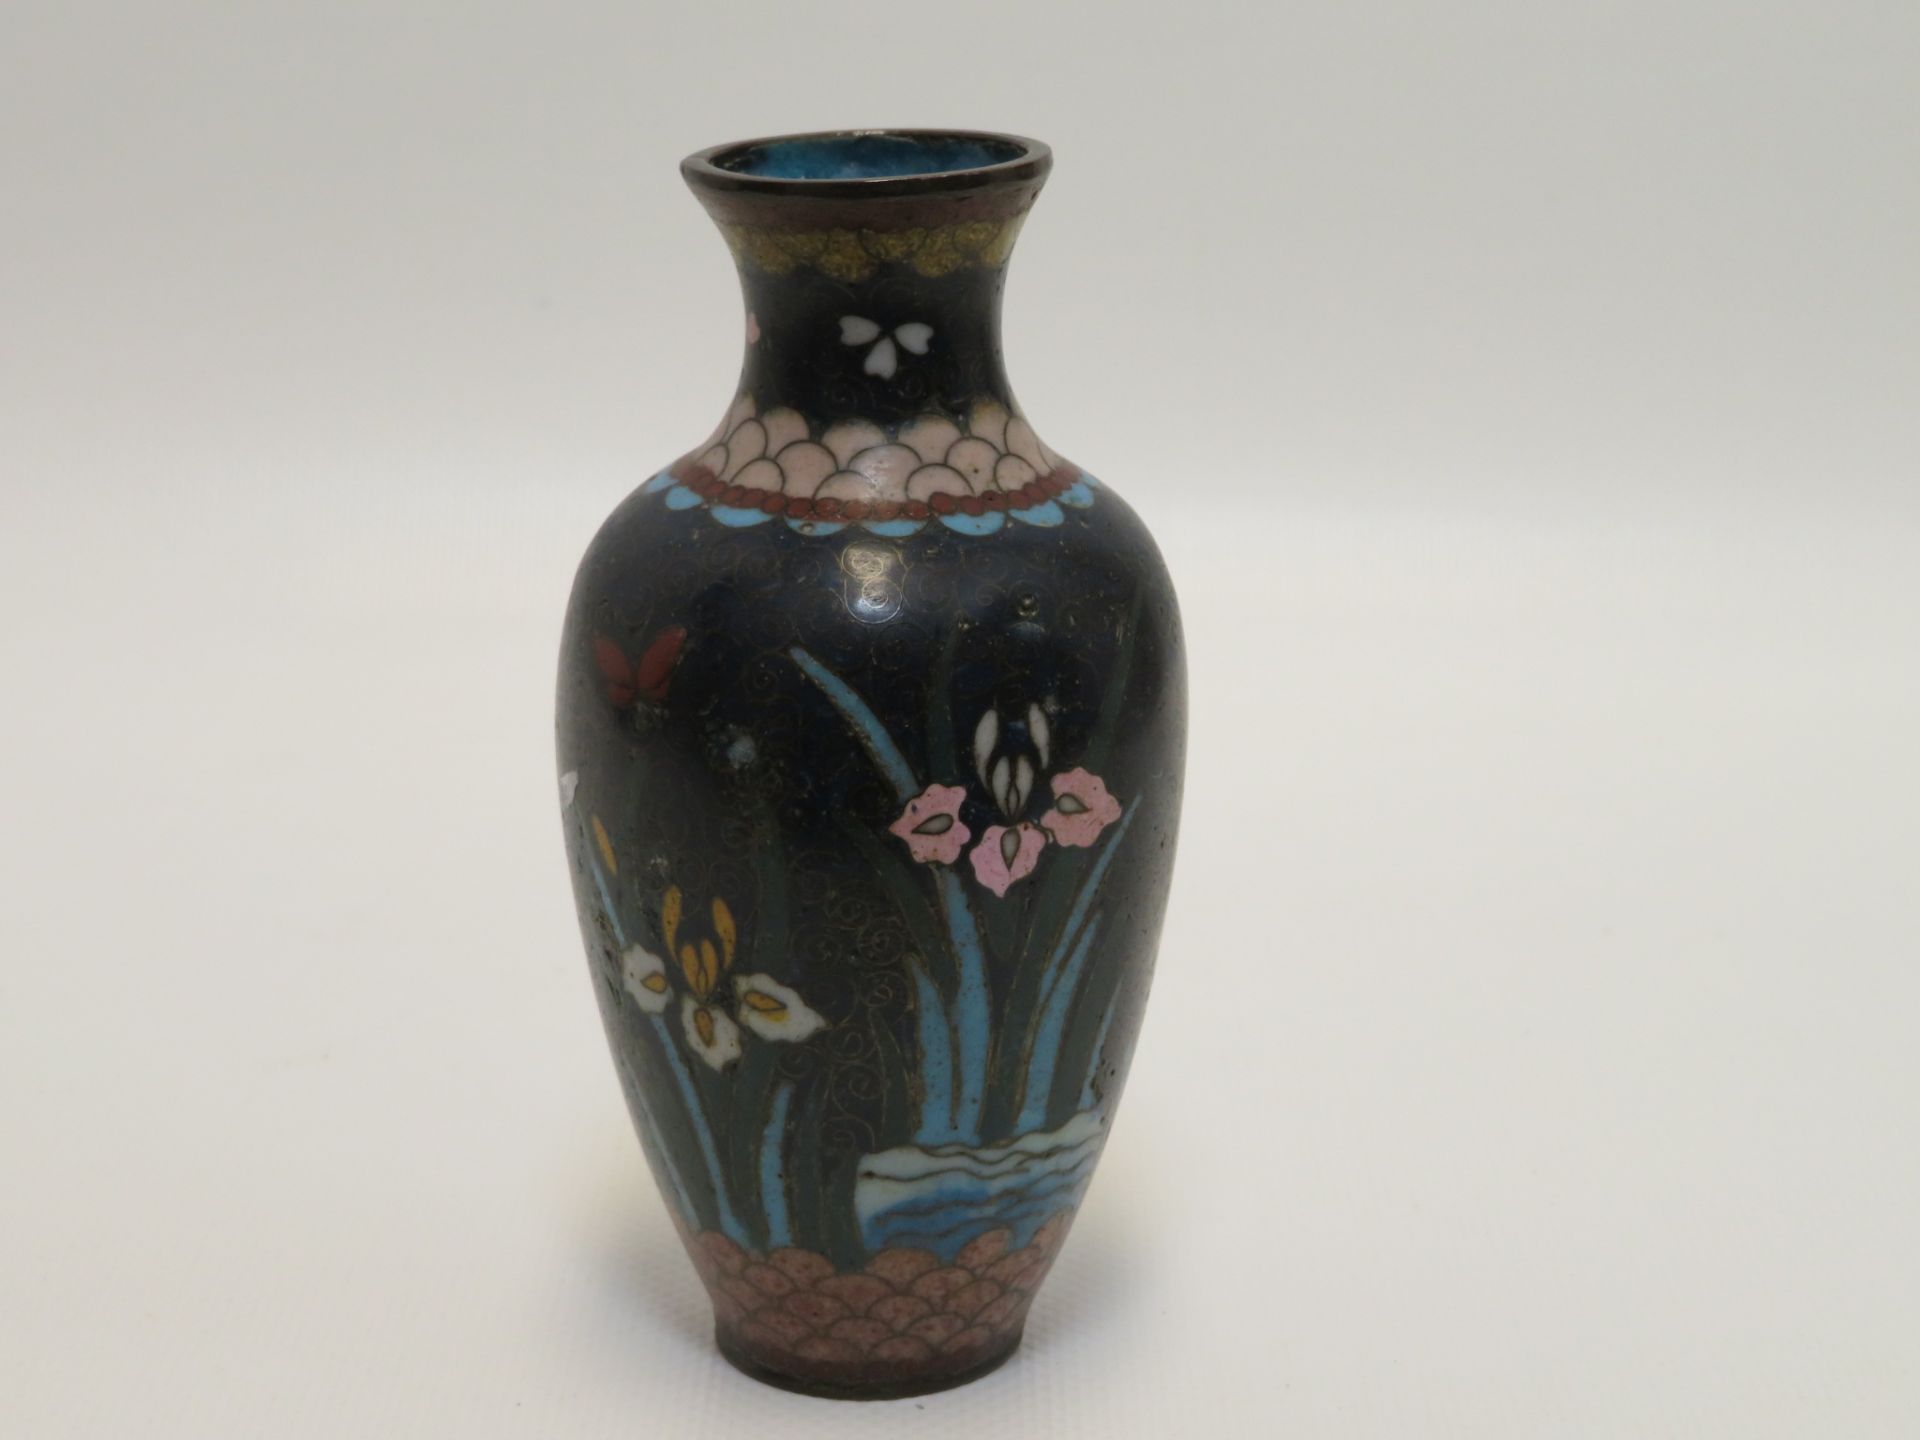 Vase, Japan, um 1900, Cloisonné, unbeschädigt, h 12 cm, d 6 cm.